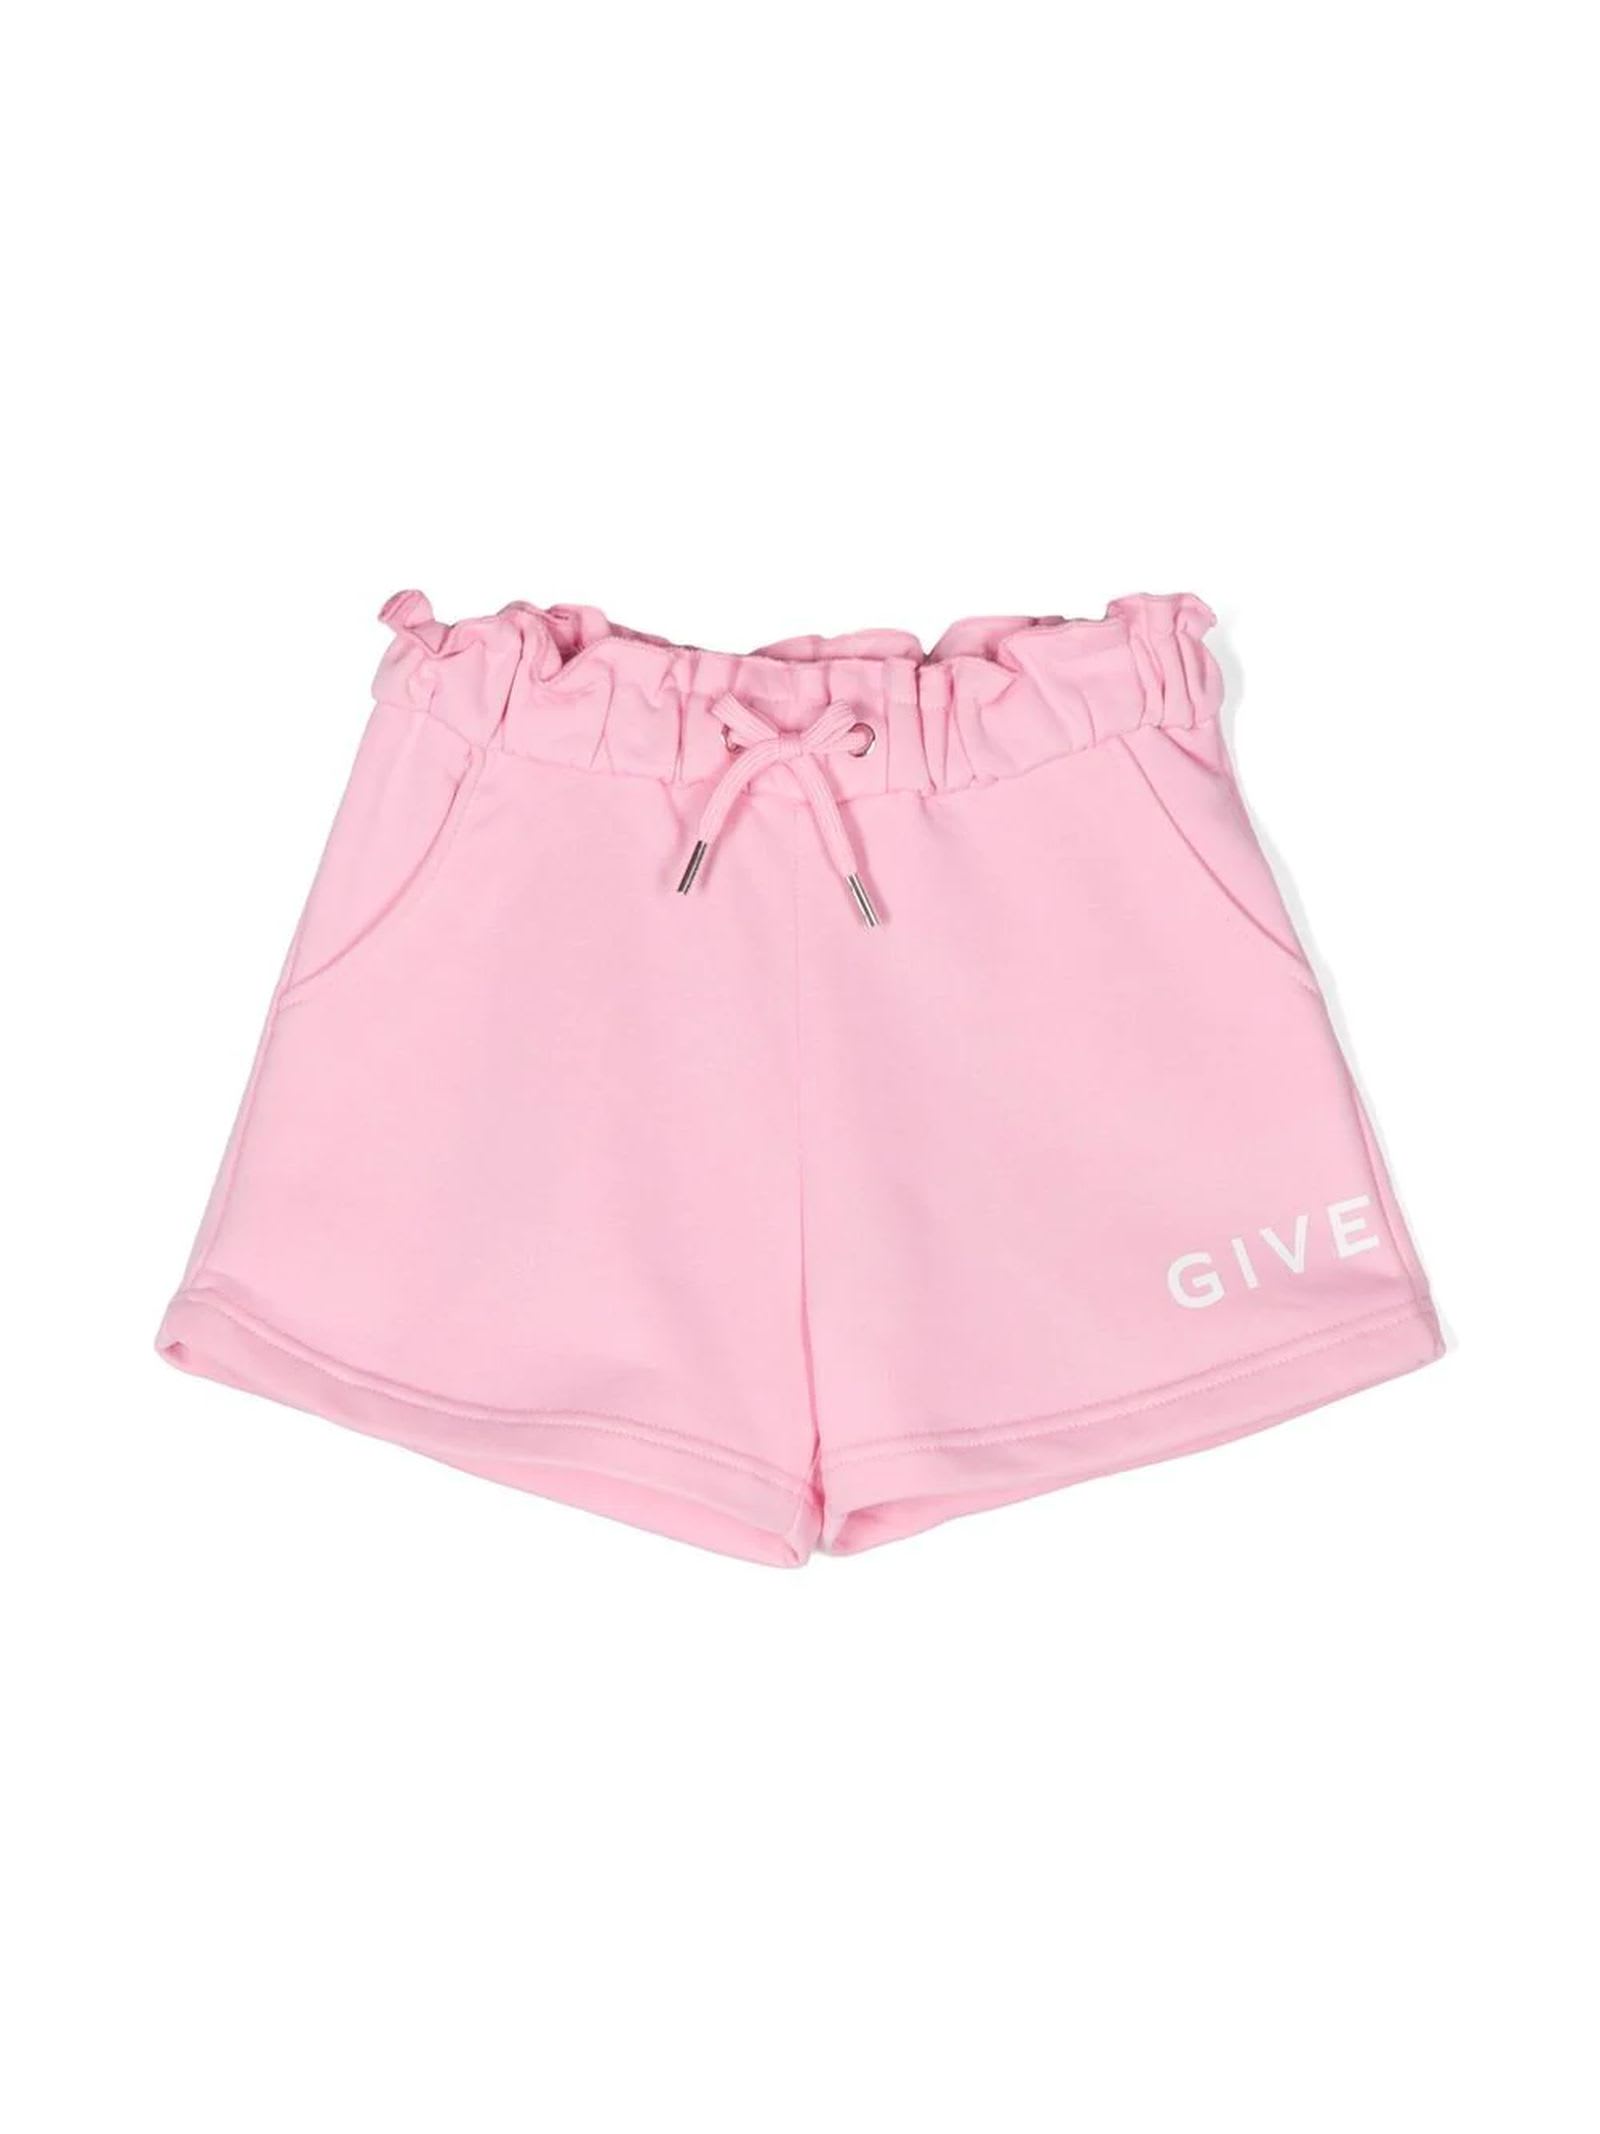 Givenchy Pink Cotton Shorts